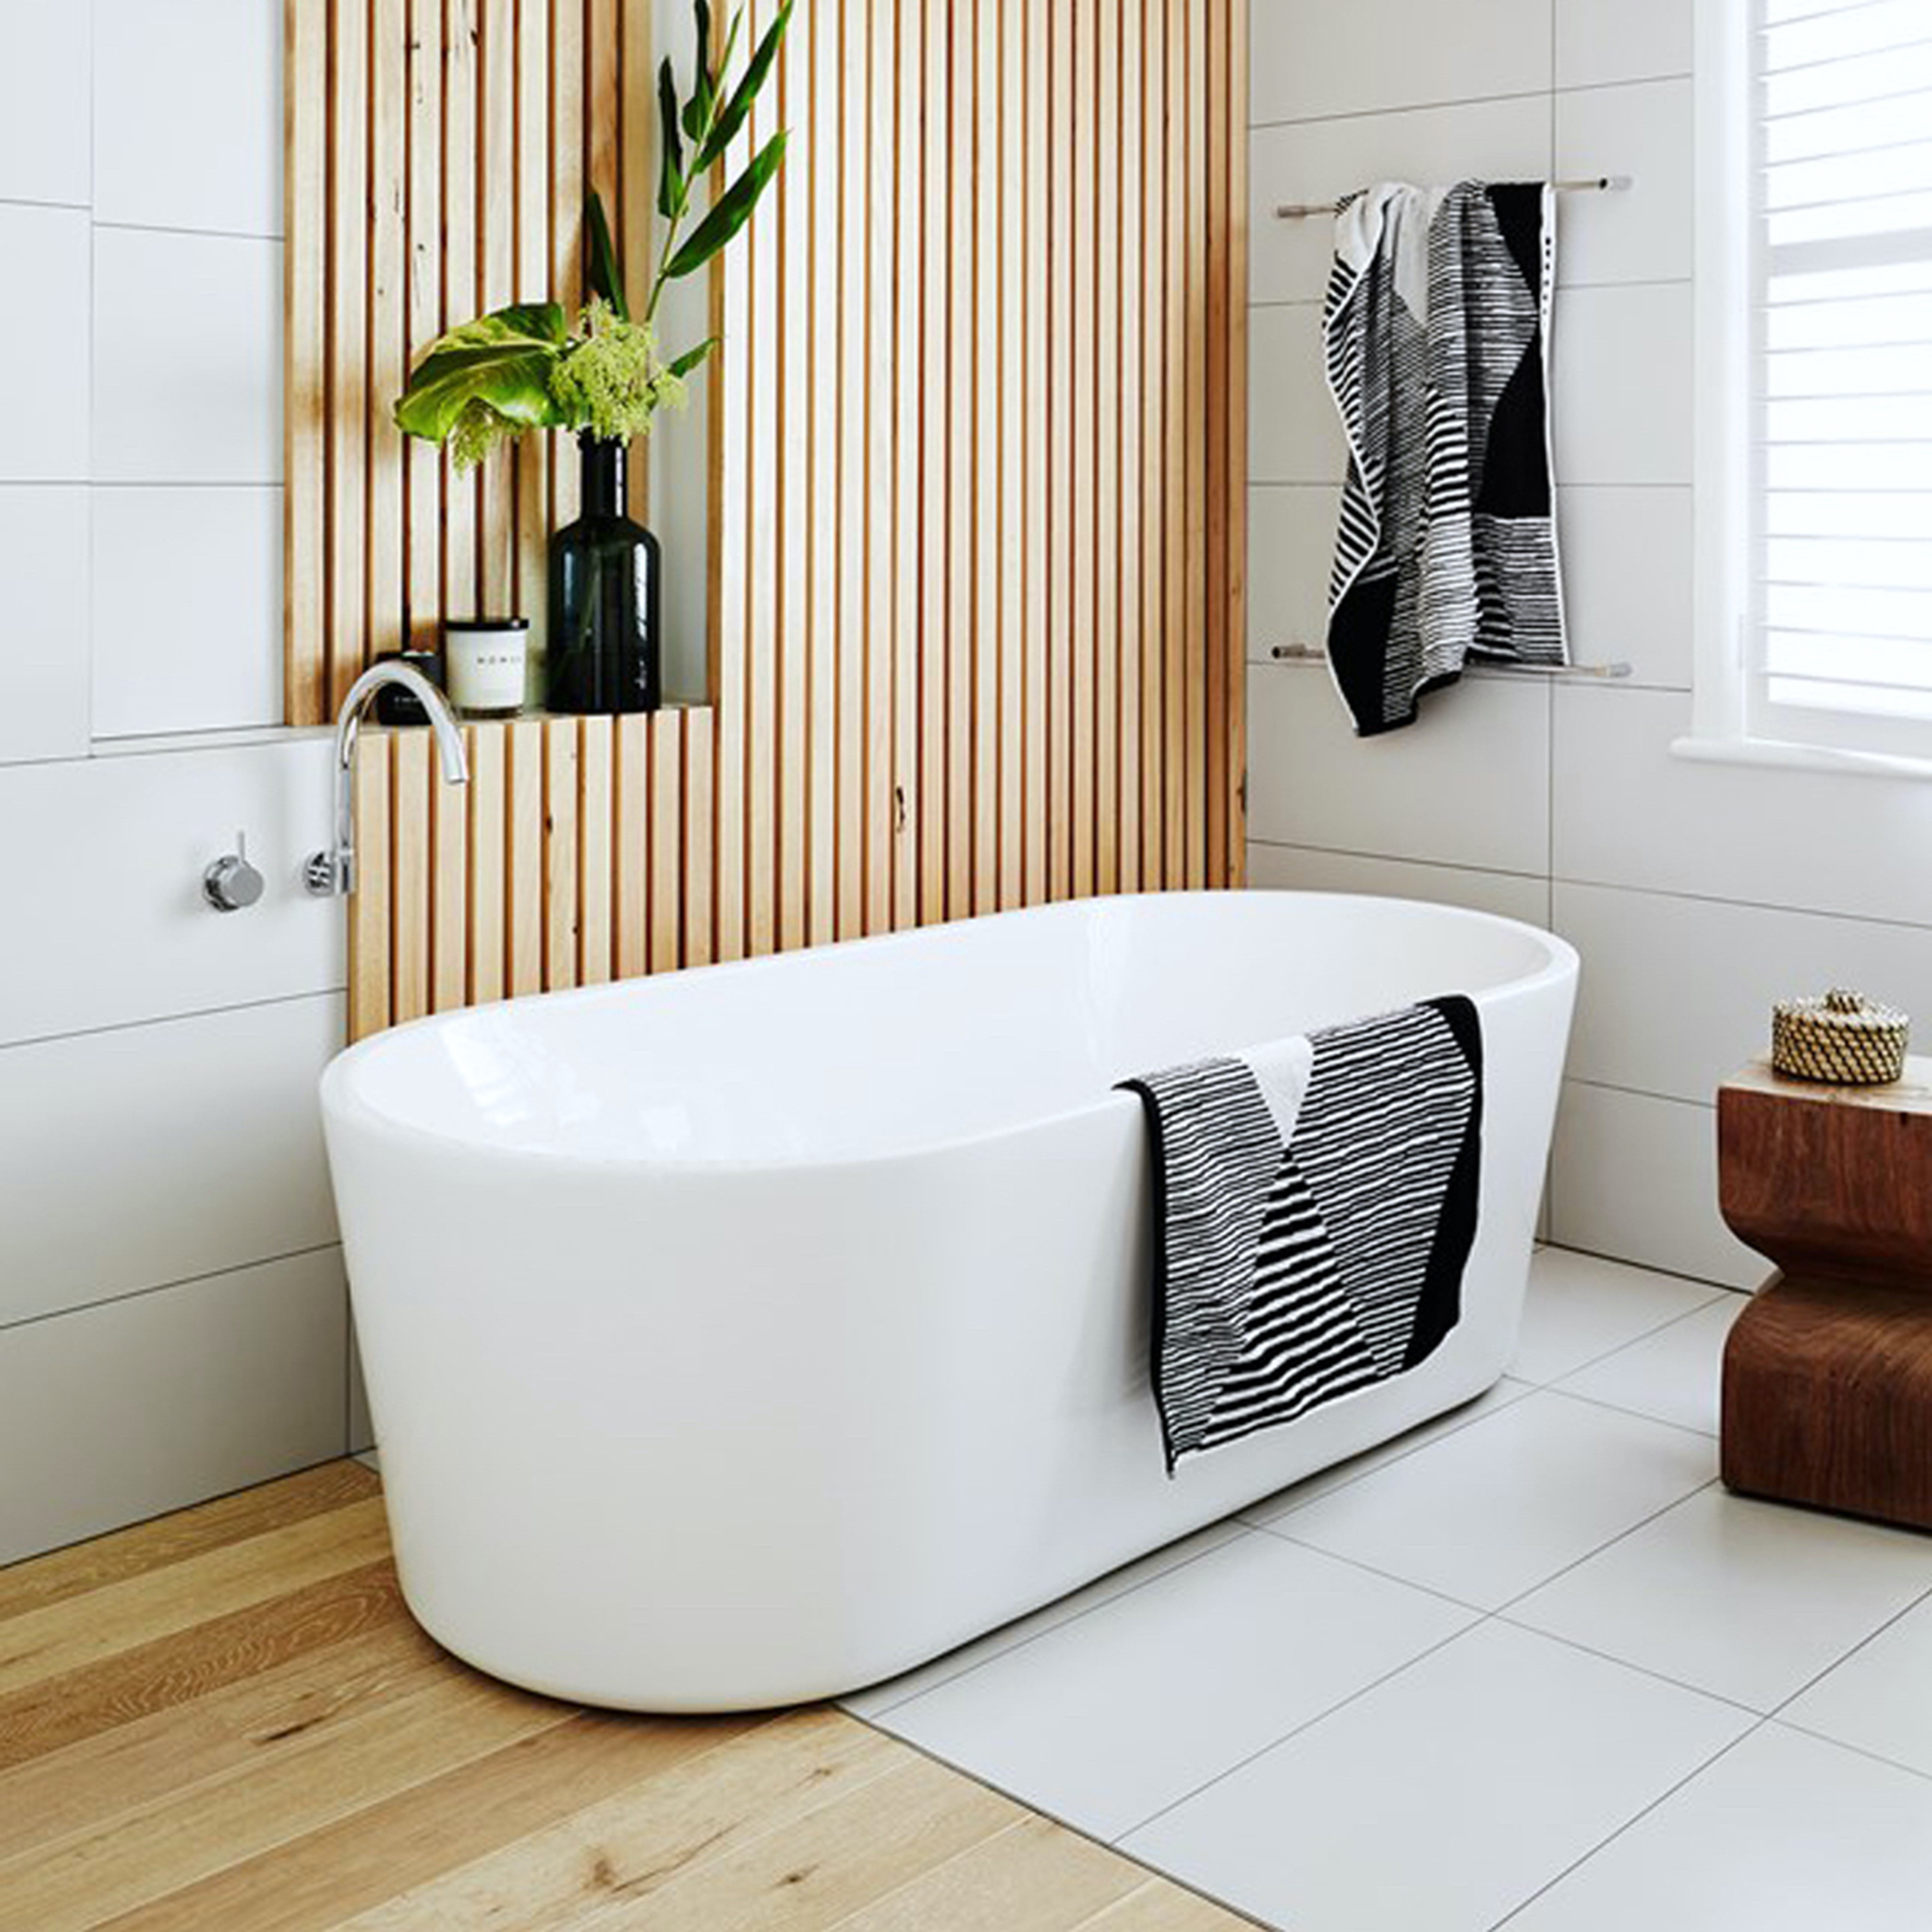 Cuarto de baño contemporáneo con una moderna bañera independiente, paneles de madera en la pared y transición de madera a azulejos.